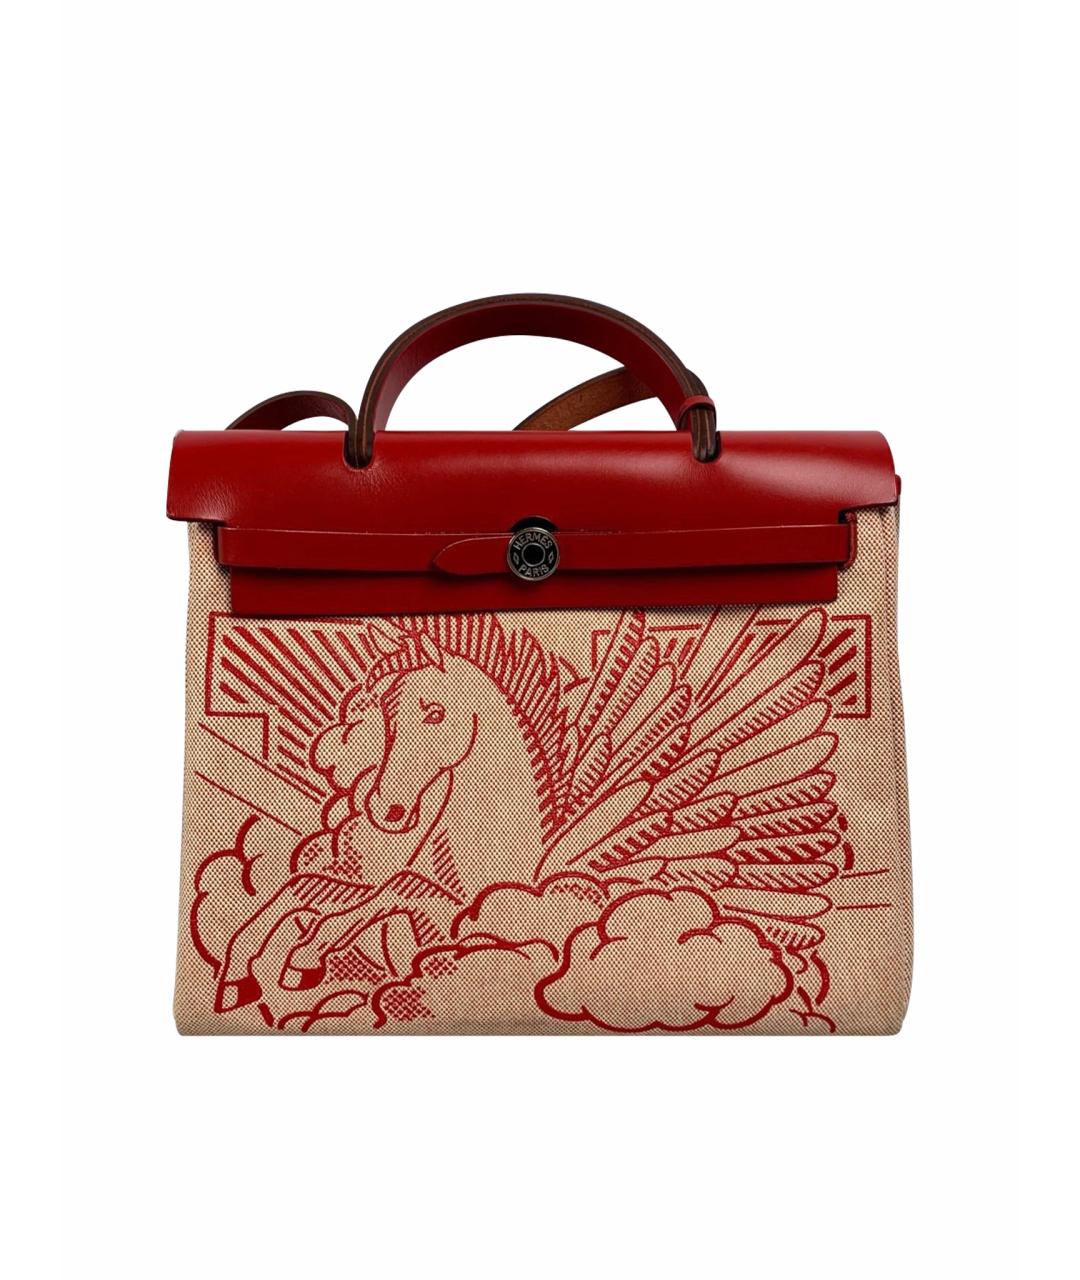 HERMES Красная кожаная сумка с короткими ручками, фото 1